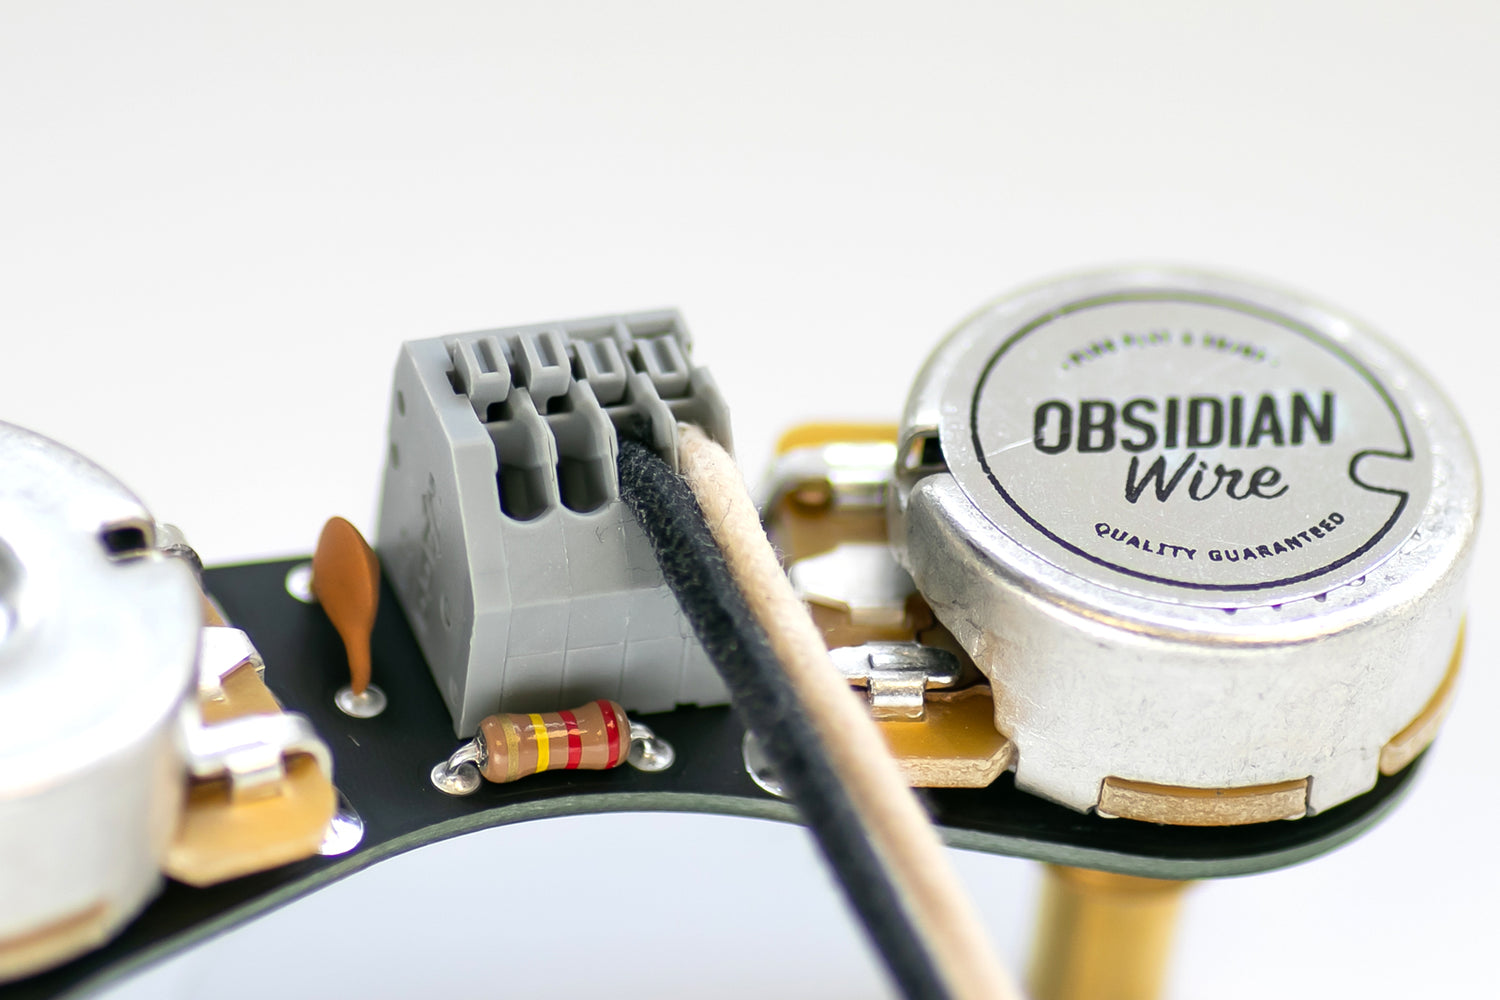 ObsidianWire für Precision Bass®